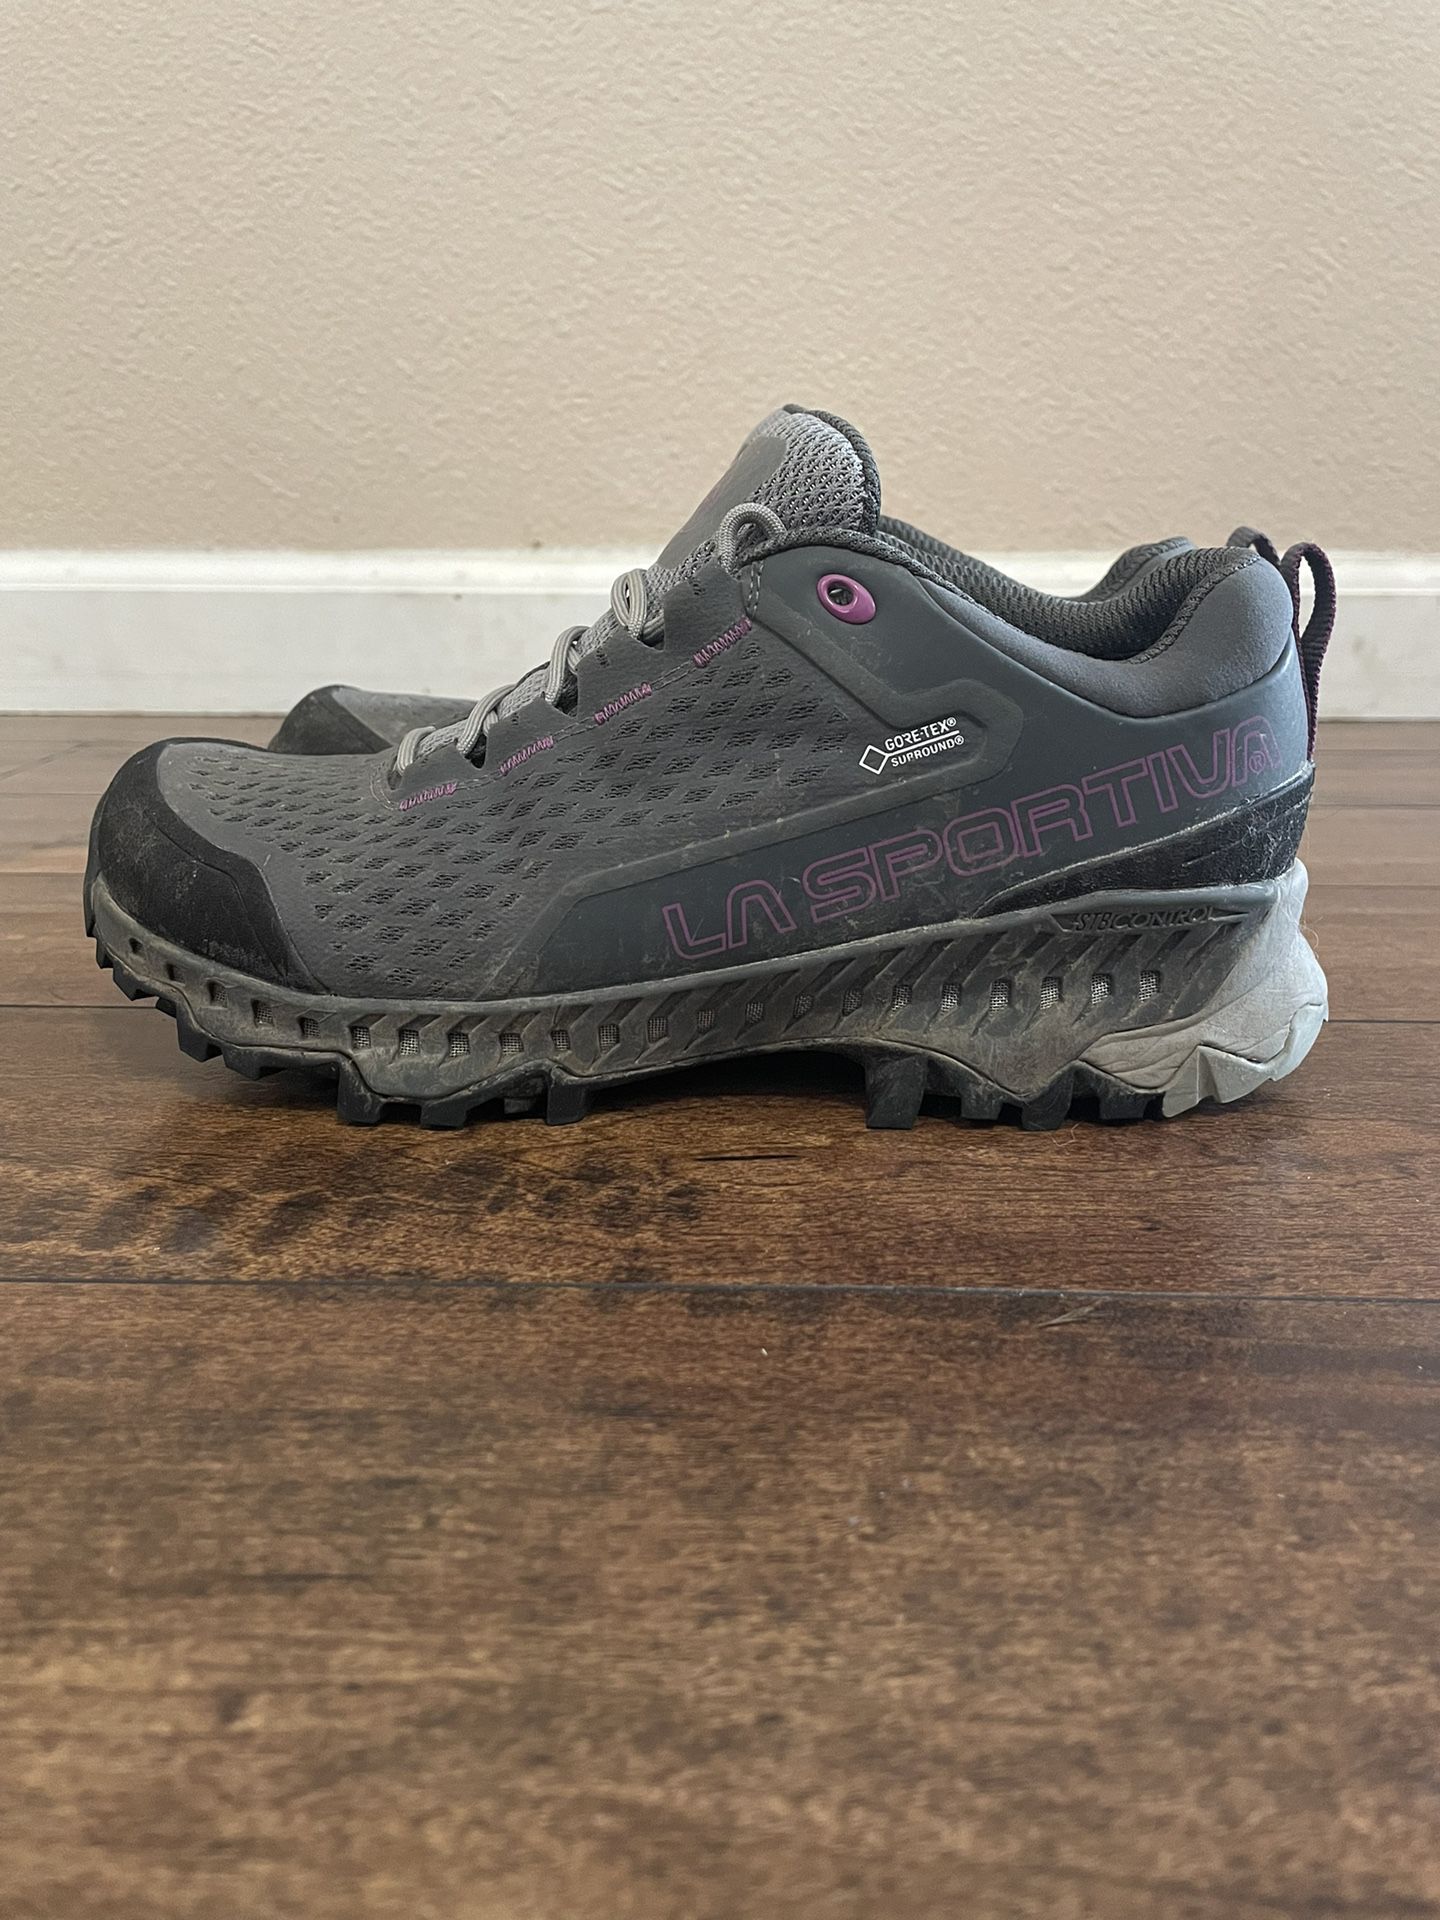 Women’s La Sportiva Hiking Shoe (Size 7)